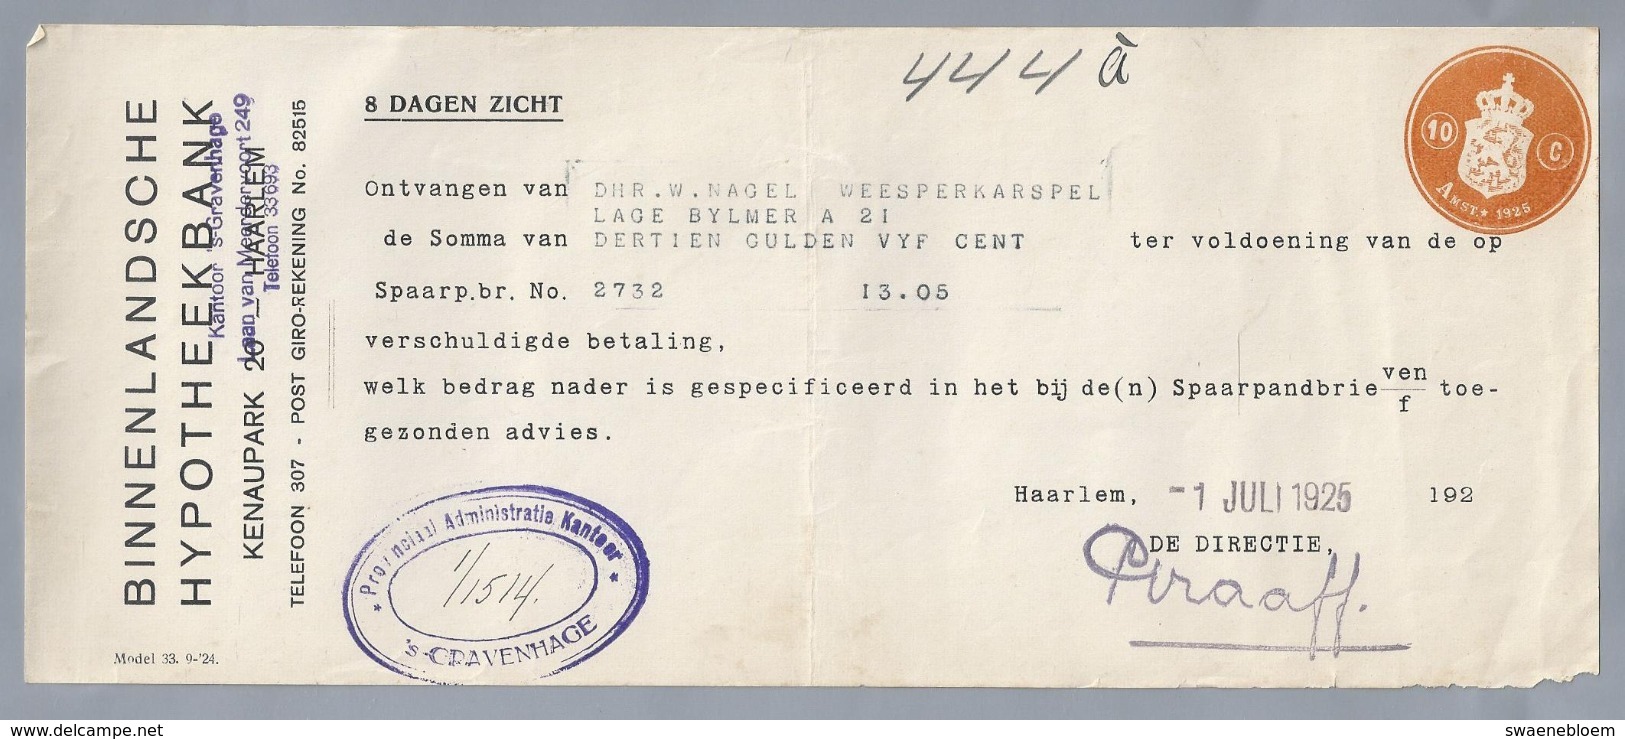 NL.- Betaal Bewijs Van De BINNENLANDSCHE HYPOTHEEKBANK. KENAUPARK 20 HAARLEM. 1 JULI 1925. - Netherlands